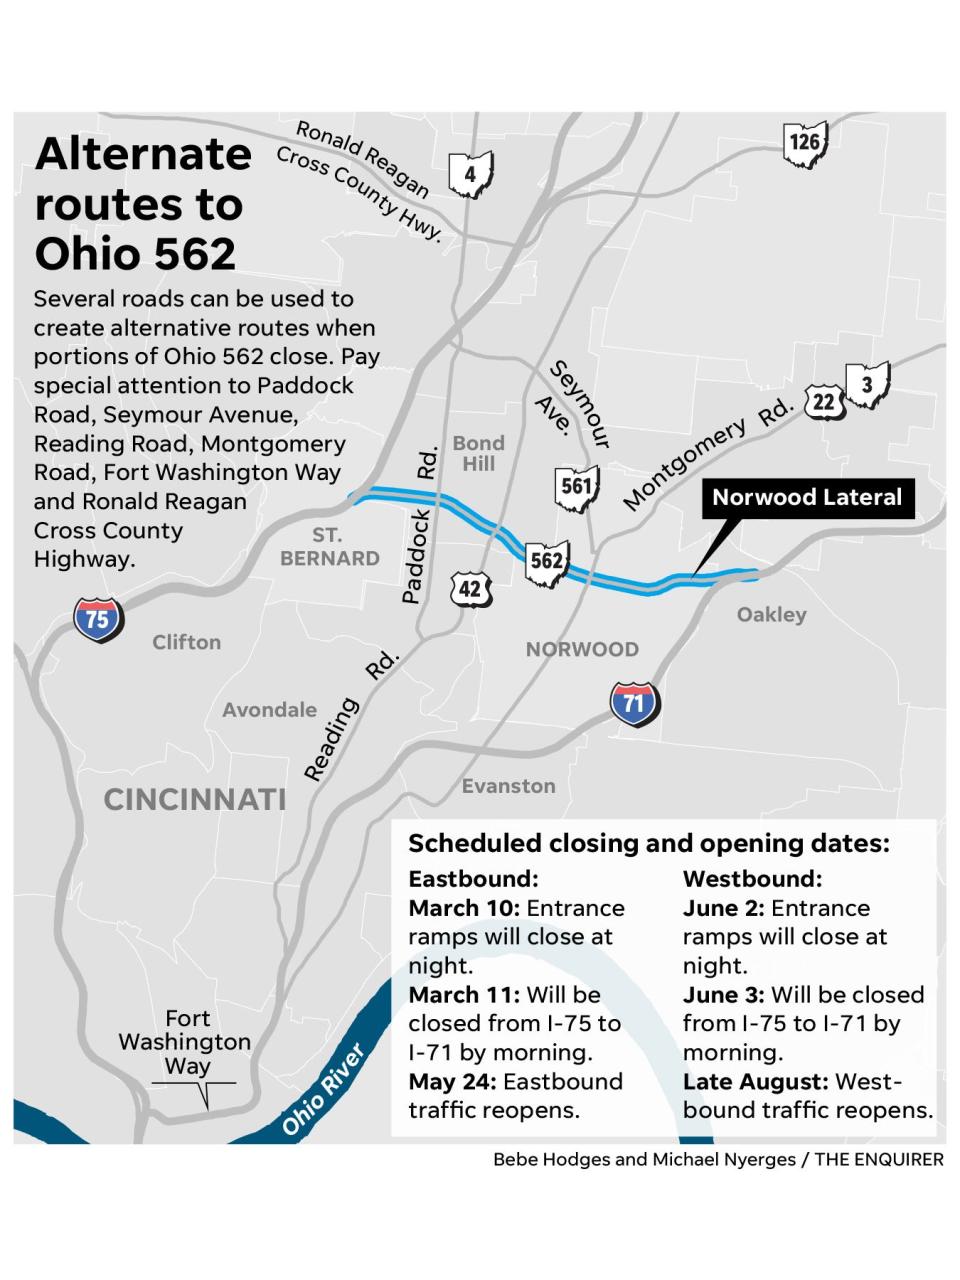 Alternate routes to Ohio 562